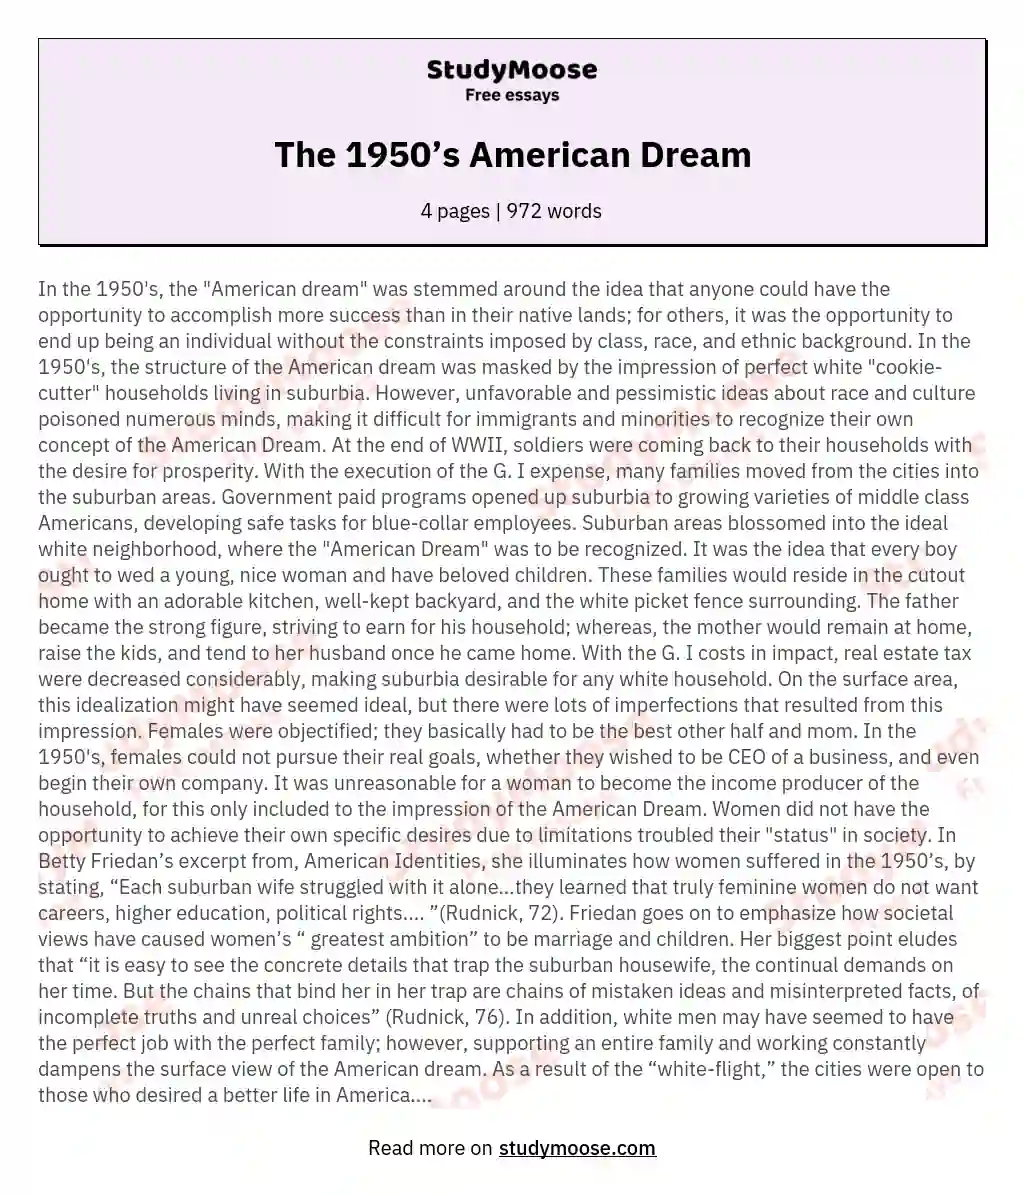 The 1950’s American Dream essay